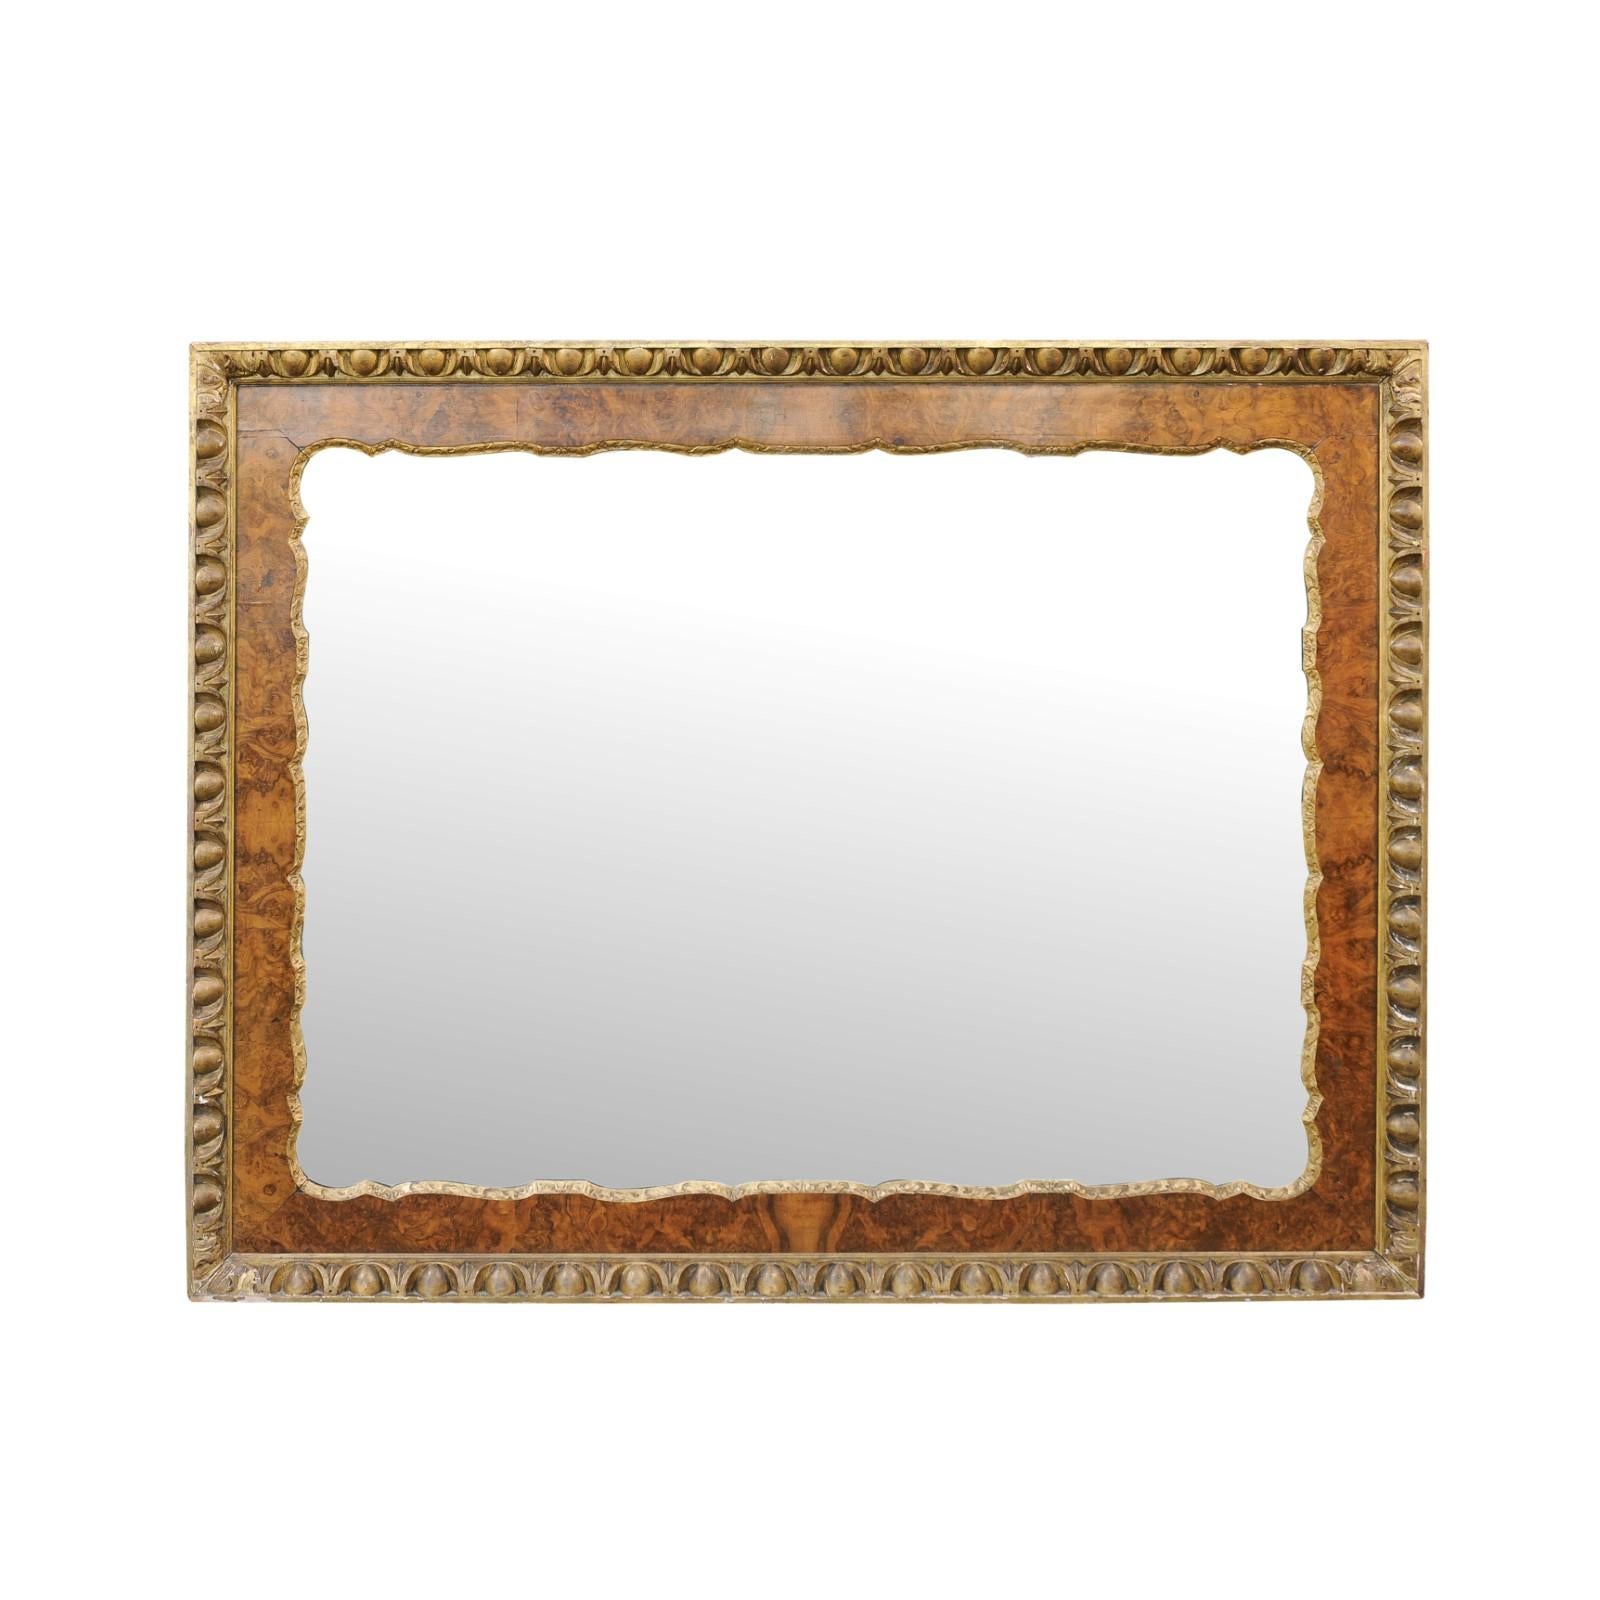 Grand miroir anglais en bois de ronce de la fin du XIXe siècle, avec des accents dorés et des motifs en forme d'œuf et de fléchettes. Né en Angleterre au cours du troisième quart du 19e siècle, ce grand miroir sera superbement exposé à la verticale